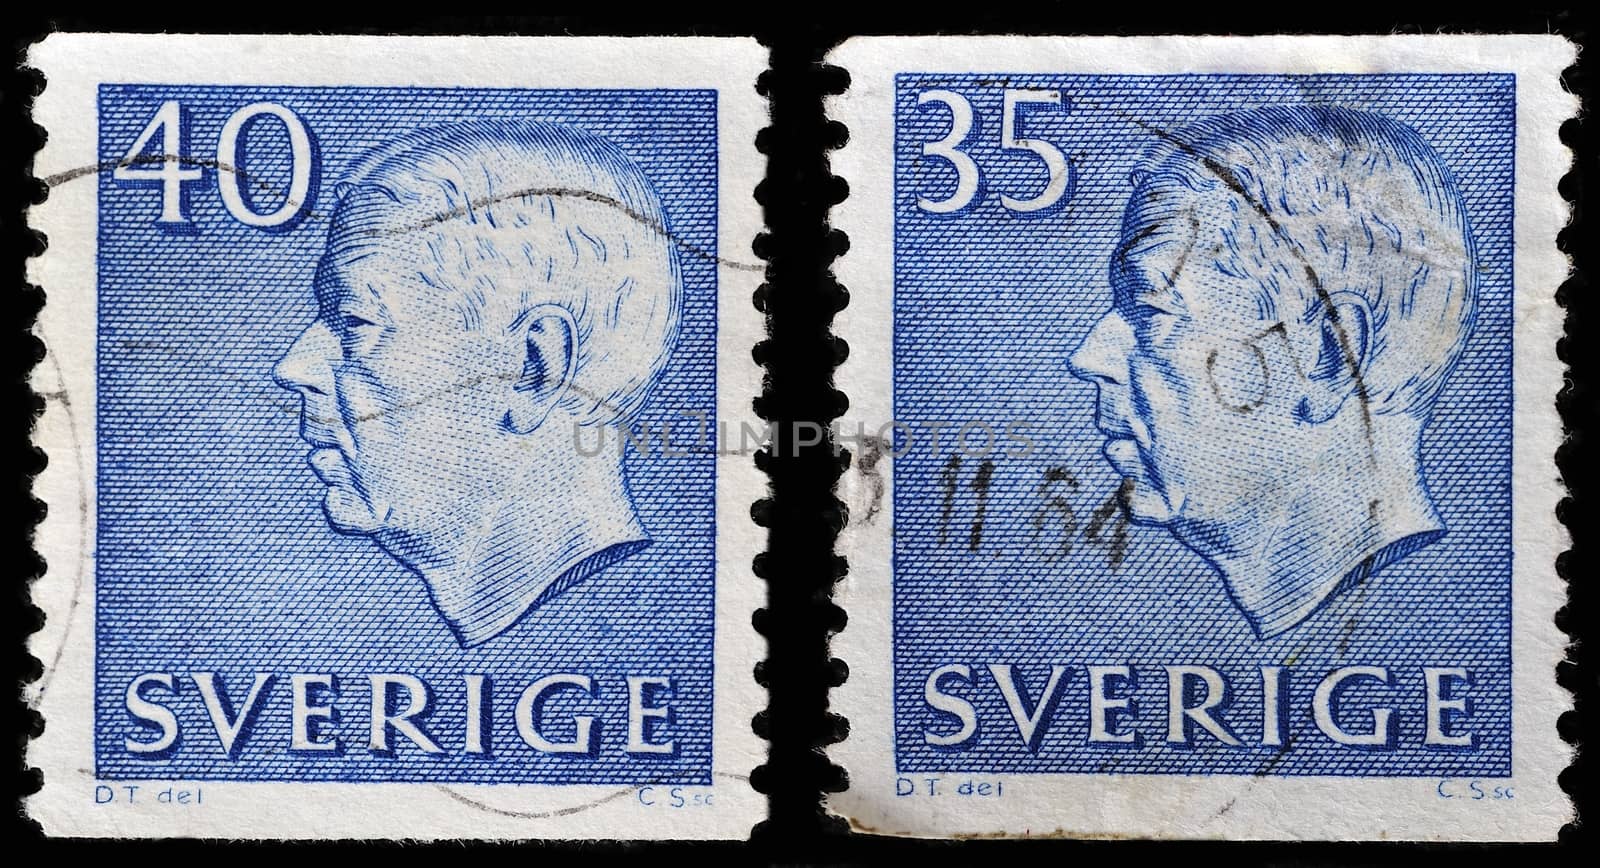 SWEDEN - CIRCA 1961: stamp printed by Sweden, shows King of Sweden Gustaf VI Adolf, circa 1961.